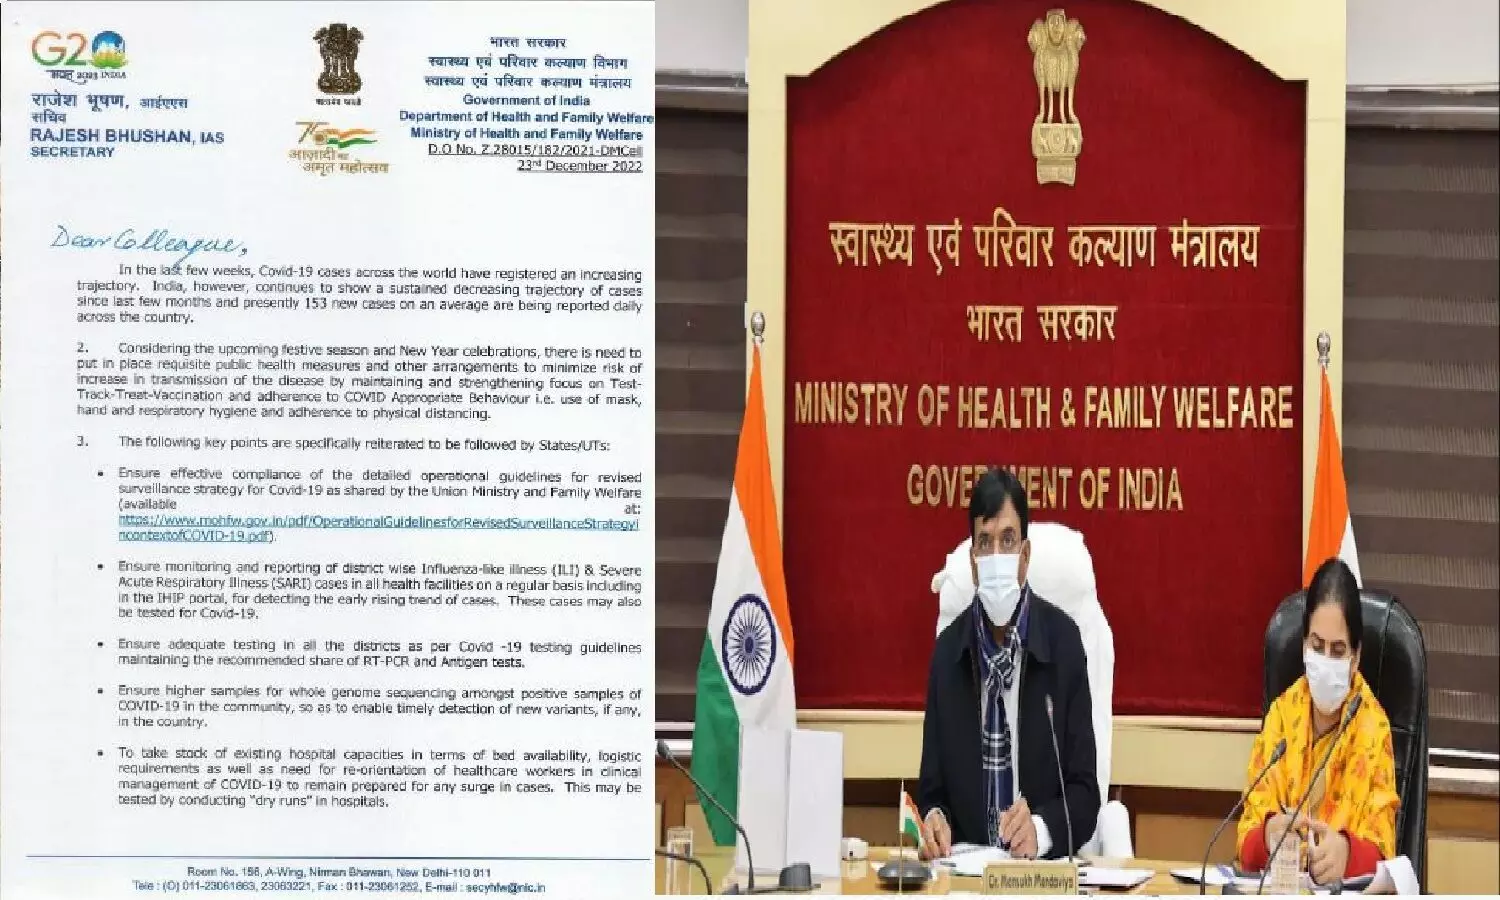 भारत में कोरोना को लेकर केंद्रीय स्वास्थ्य मंत्रालय ने एडवाइजरी जारी कर दी है, देख लीजिये